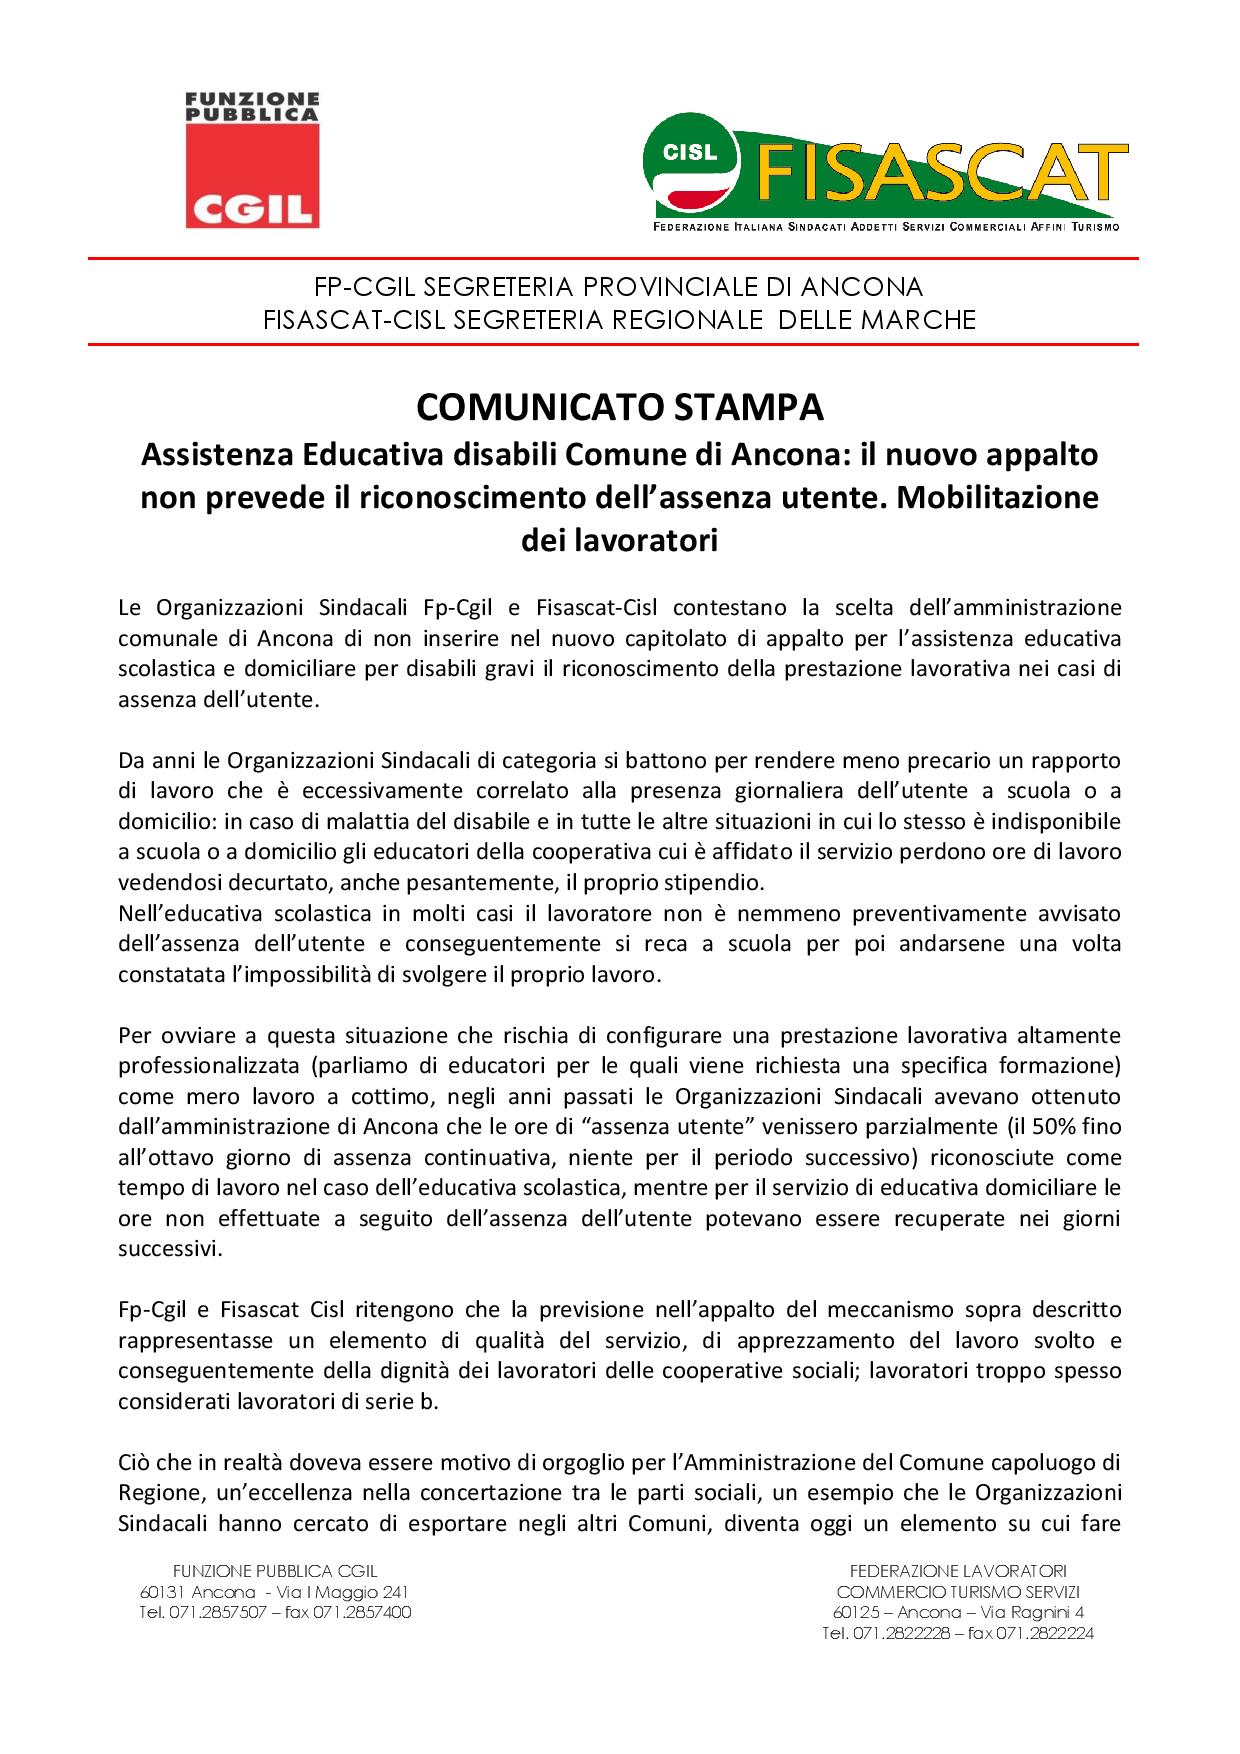 comunicato stampa assistenza educativa comune Ancona 11.05.-page-001